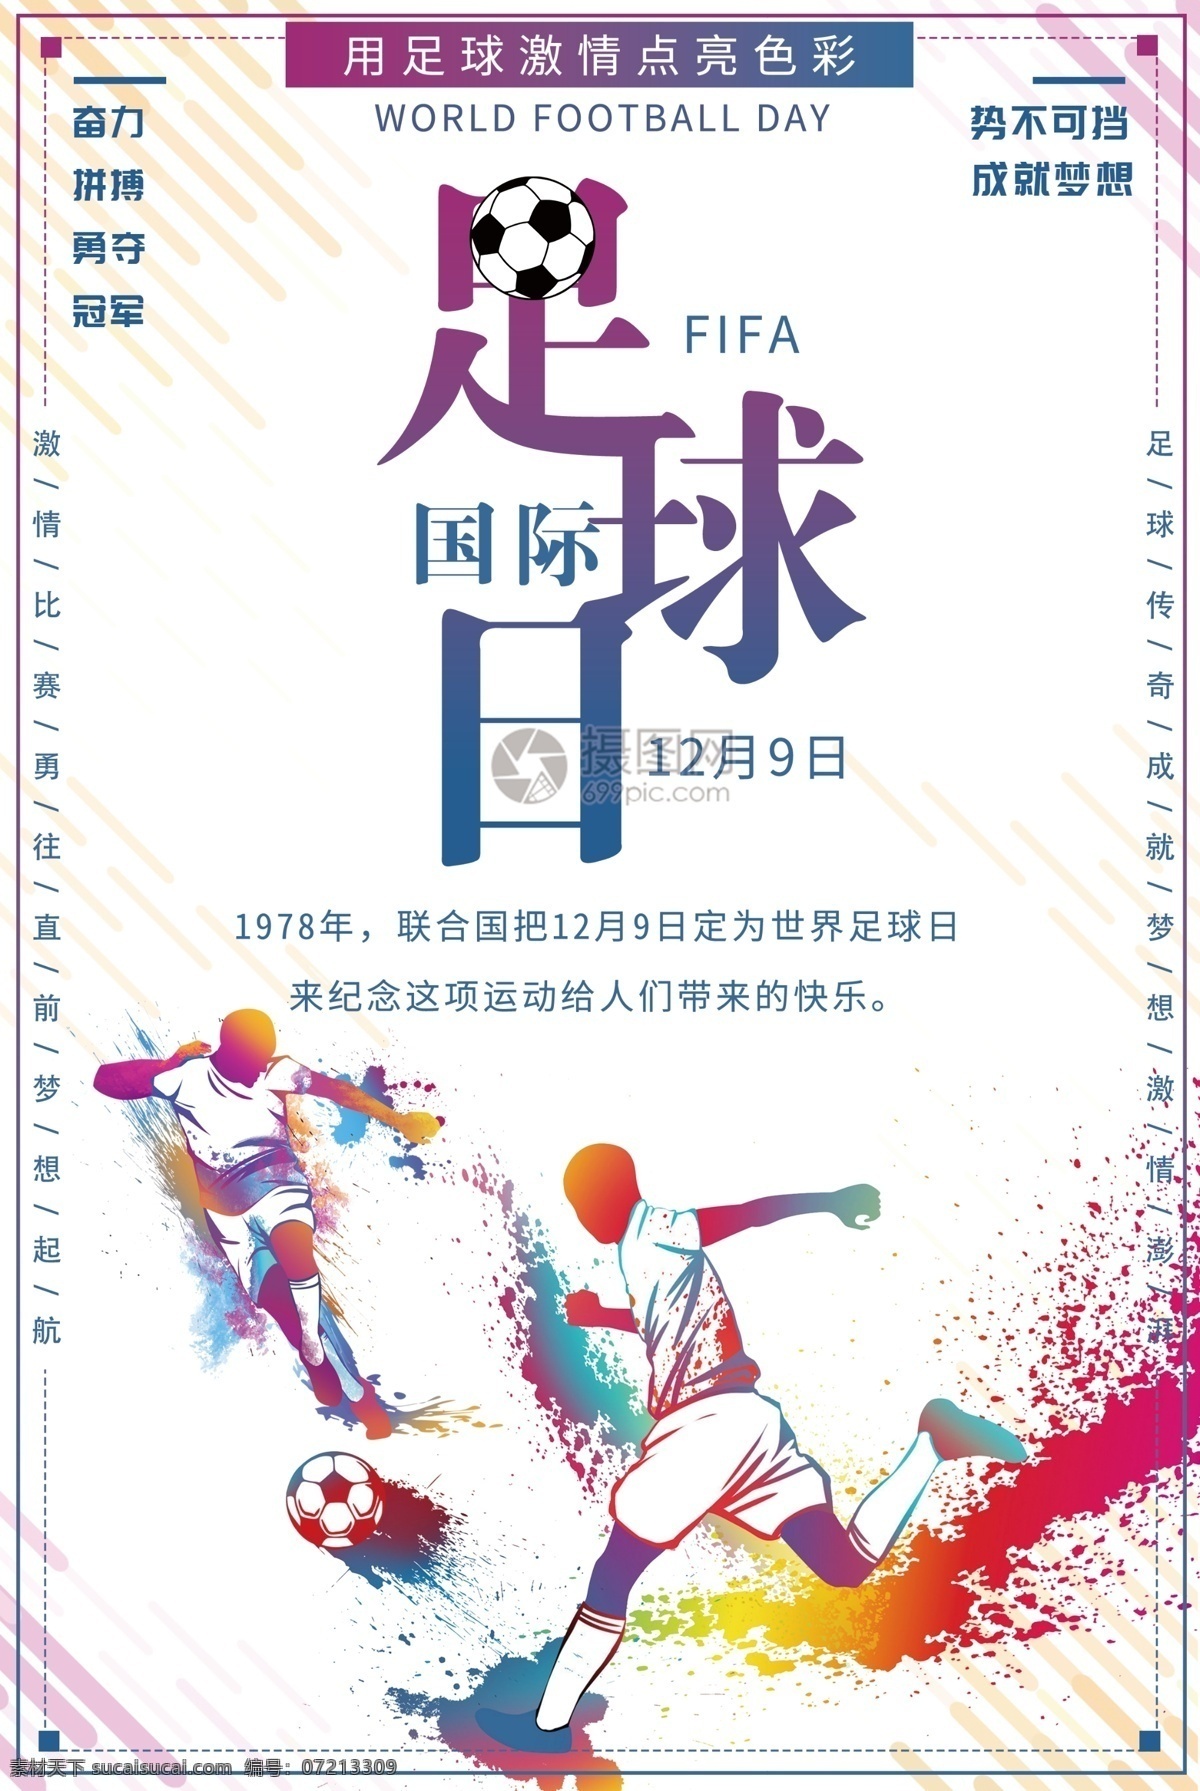 世界 足球 日 宣传海报 世界足球日 国际 足球日 足球场 色彩 比赛 宣传 活动 节日 激情比赛 传递热情